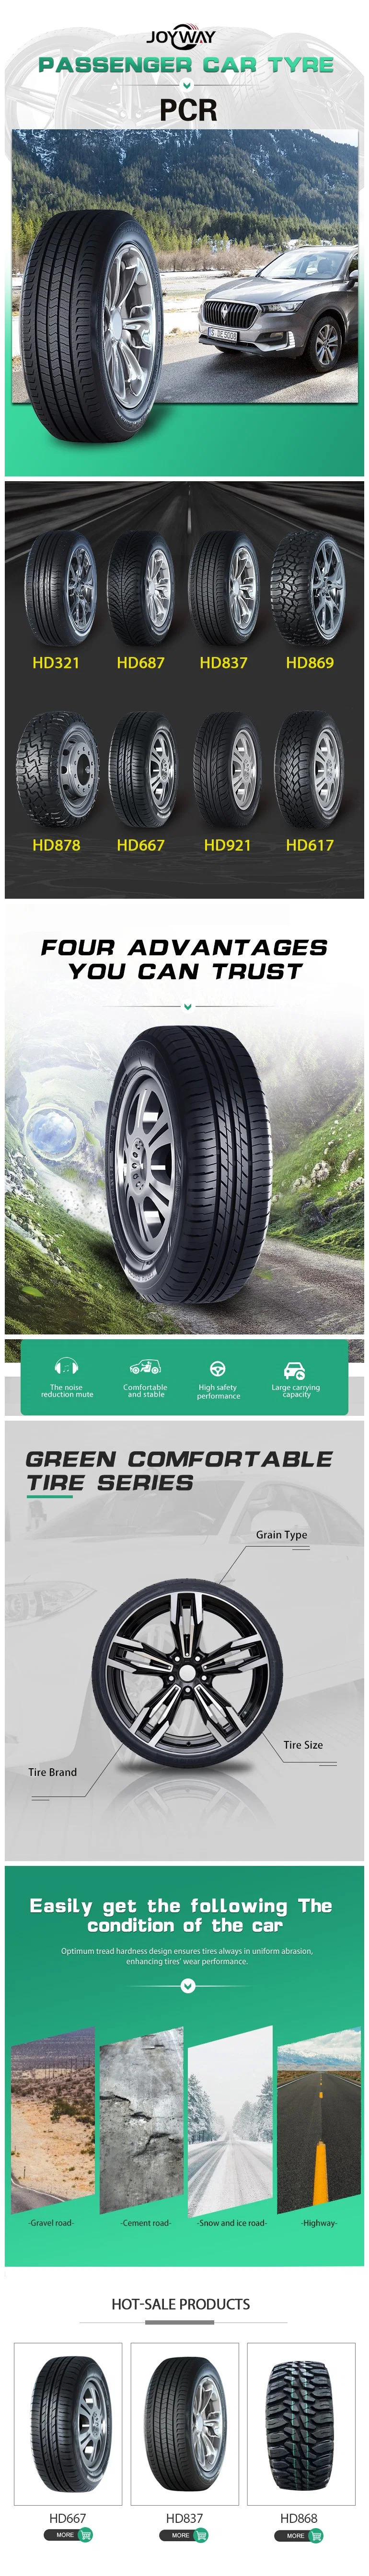 China Hot Sale Brand Europe Technology Tyre Manufacturer PCR Pneu Neumaticos Llantas Passenger Car Tire Run Flat Tires Pneu 175/70r14 175/70r13